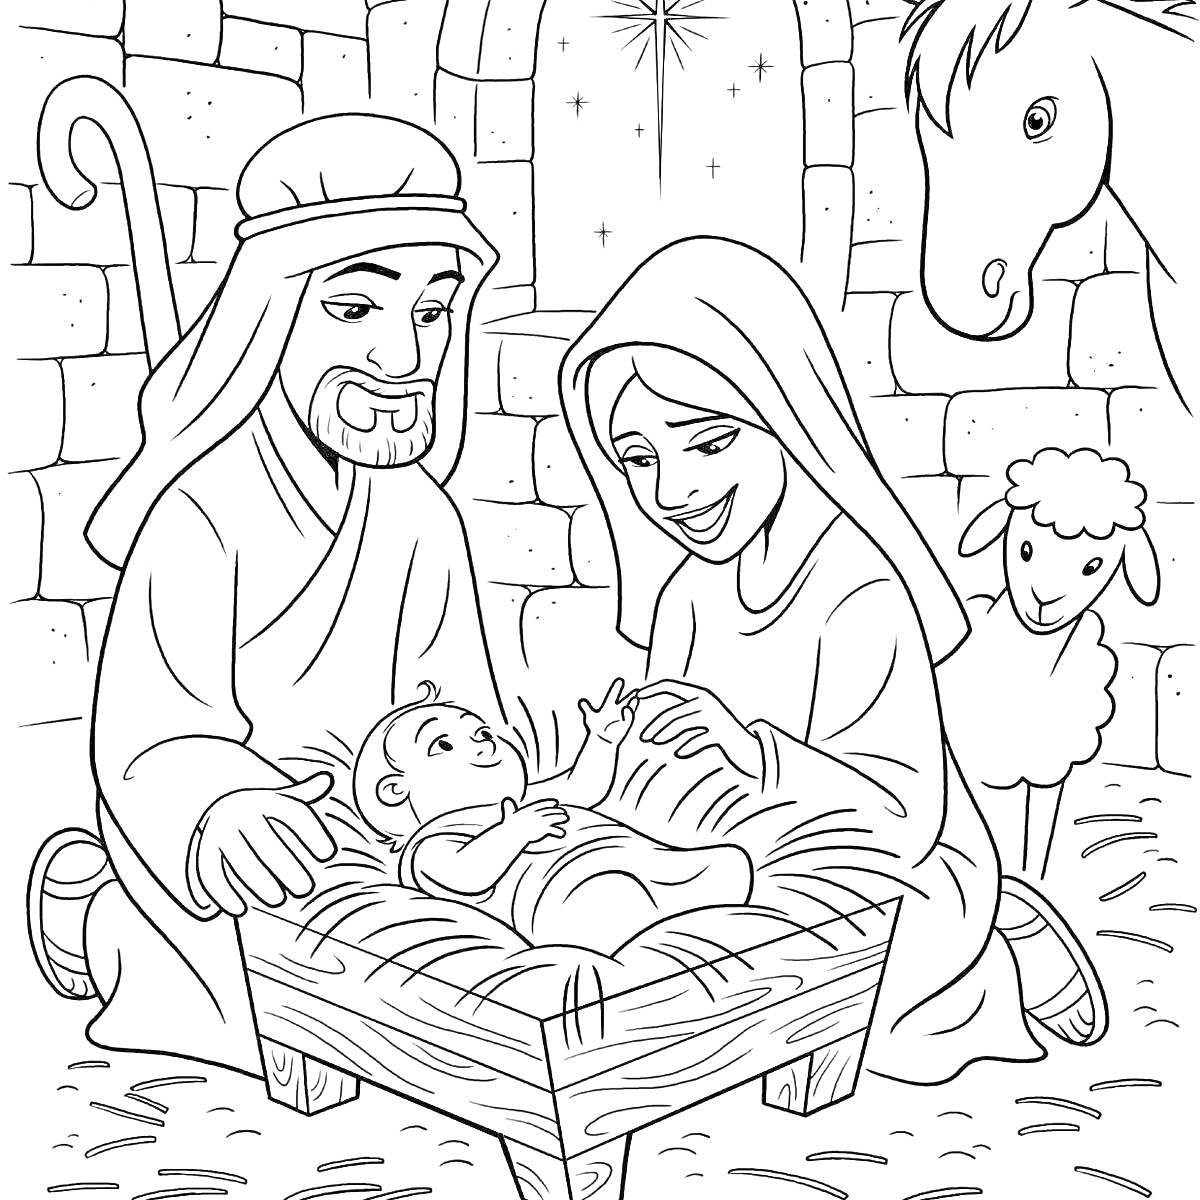 Раскраска Рождественская сцена с Иосифом, Марией, младенцем Иисусом, ослом и ягненком в хлеву